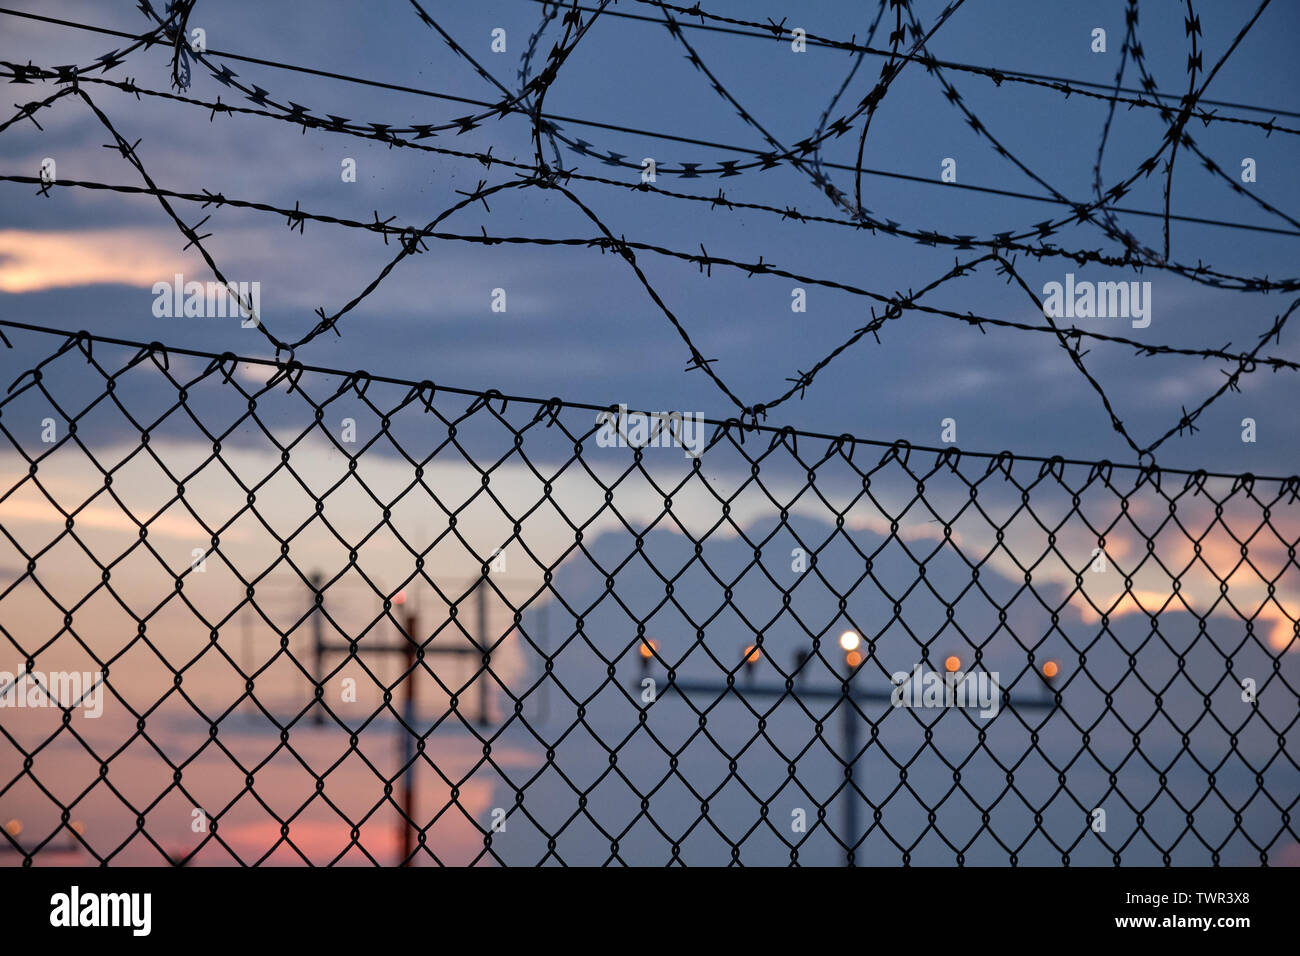 Dettagli di una catena collegamento recinto con filo spinato e nella parte anteriore di un tramonto in un aeroporto Foto Stock